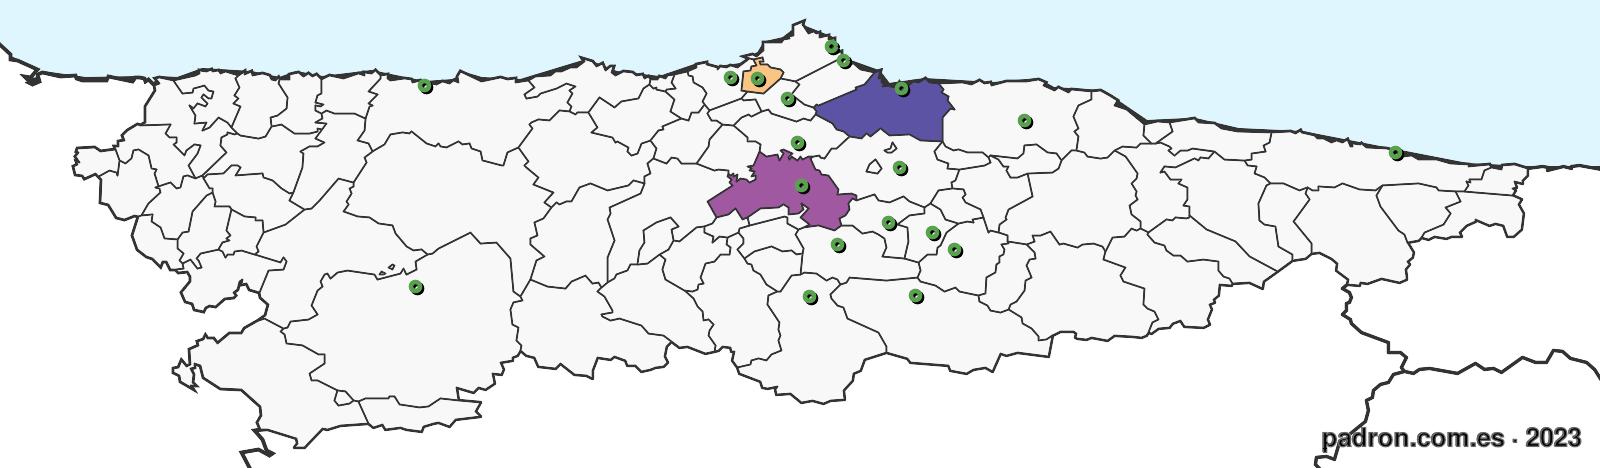 serbios en asturias.